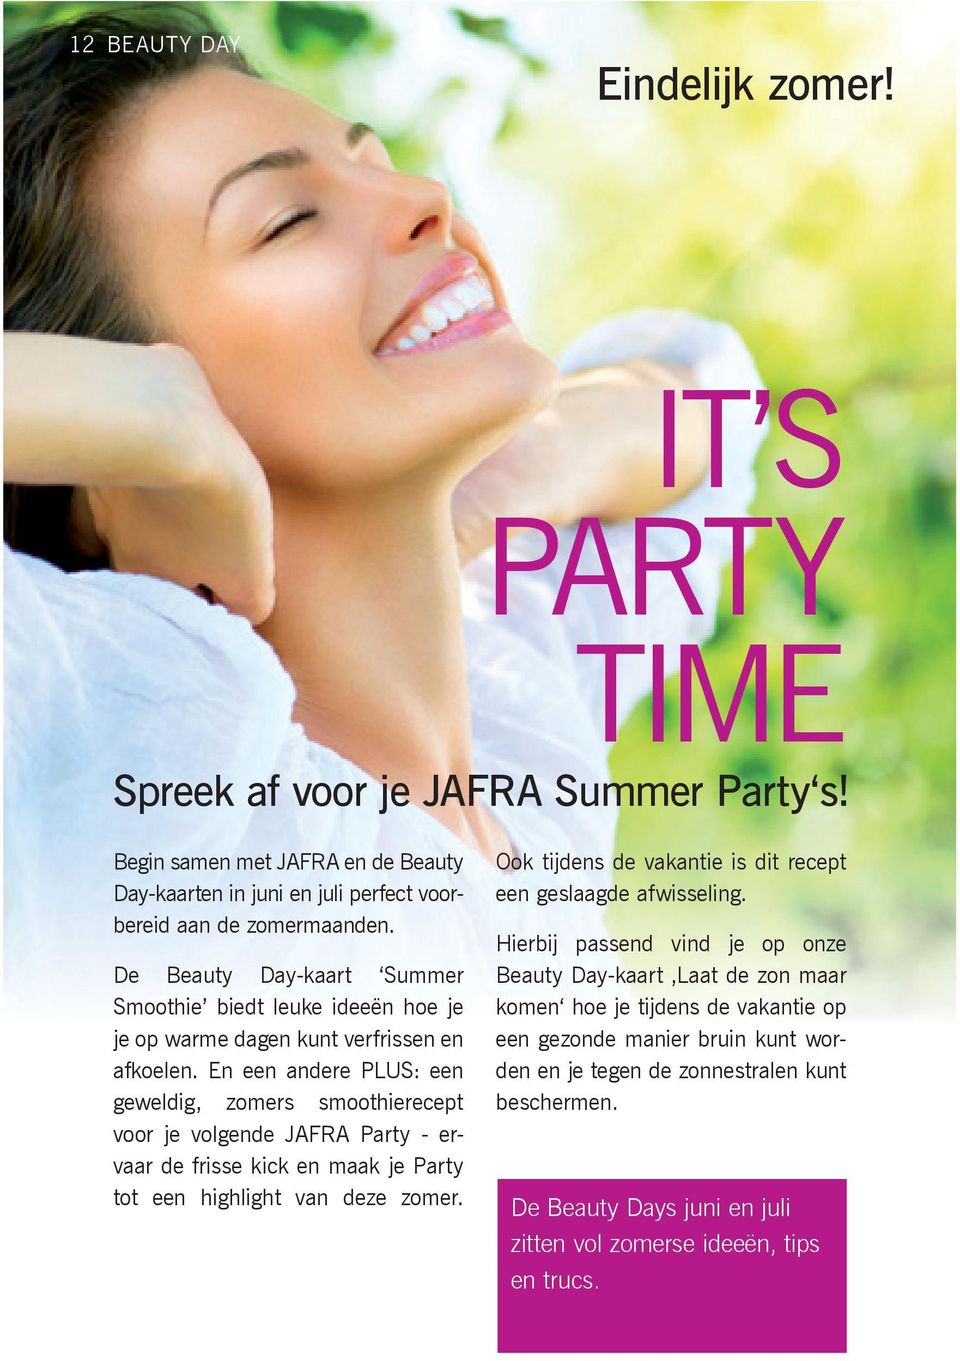 En een andere PLUS: een geweldig, zomers smoothierecept voor je volgende JAFRA Party - ervaar de frisse kick en maak je Party tot een highlight van deze zomer.